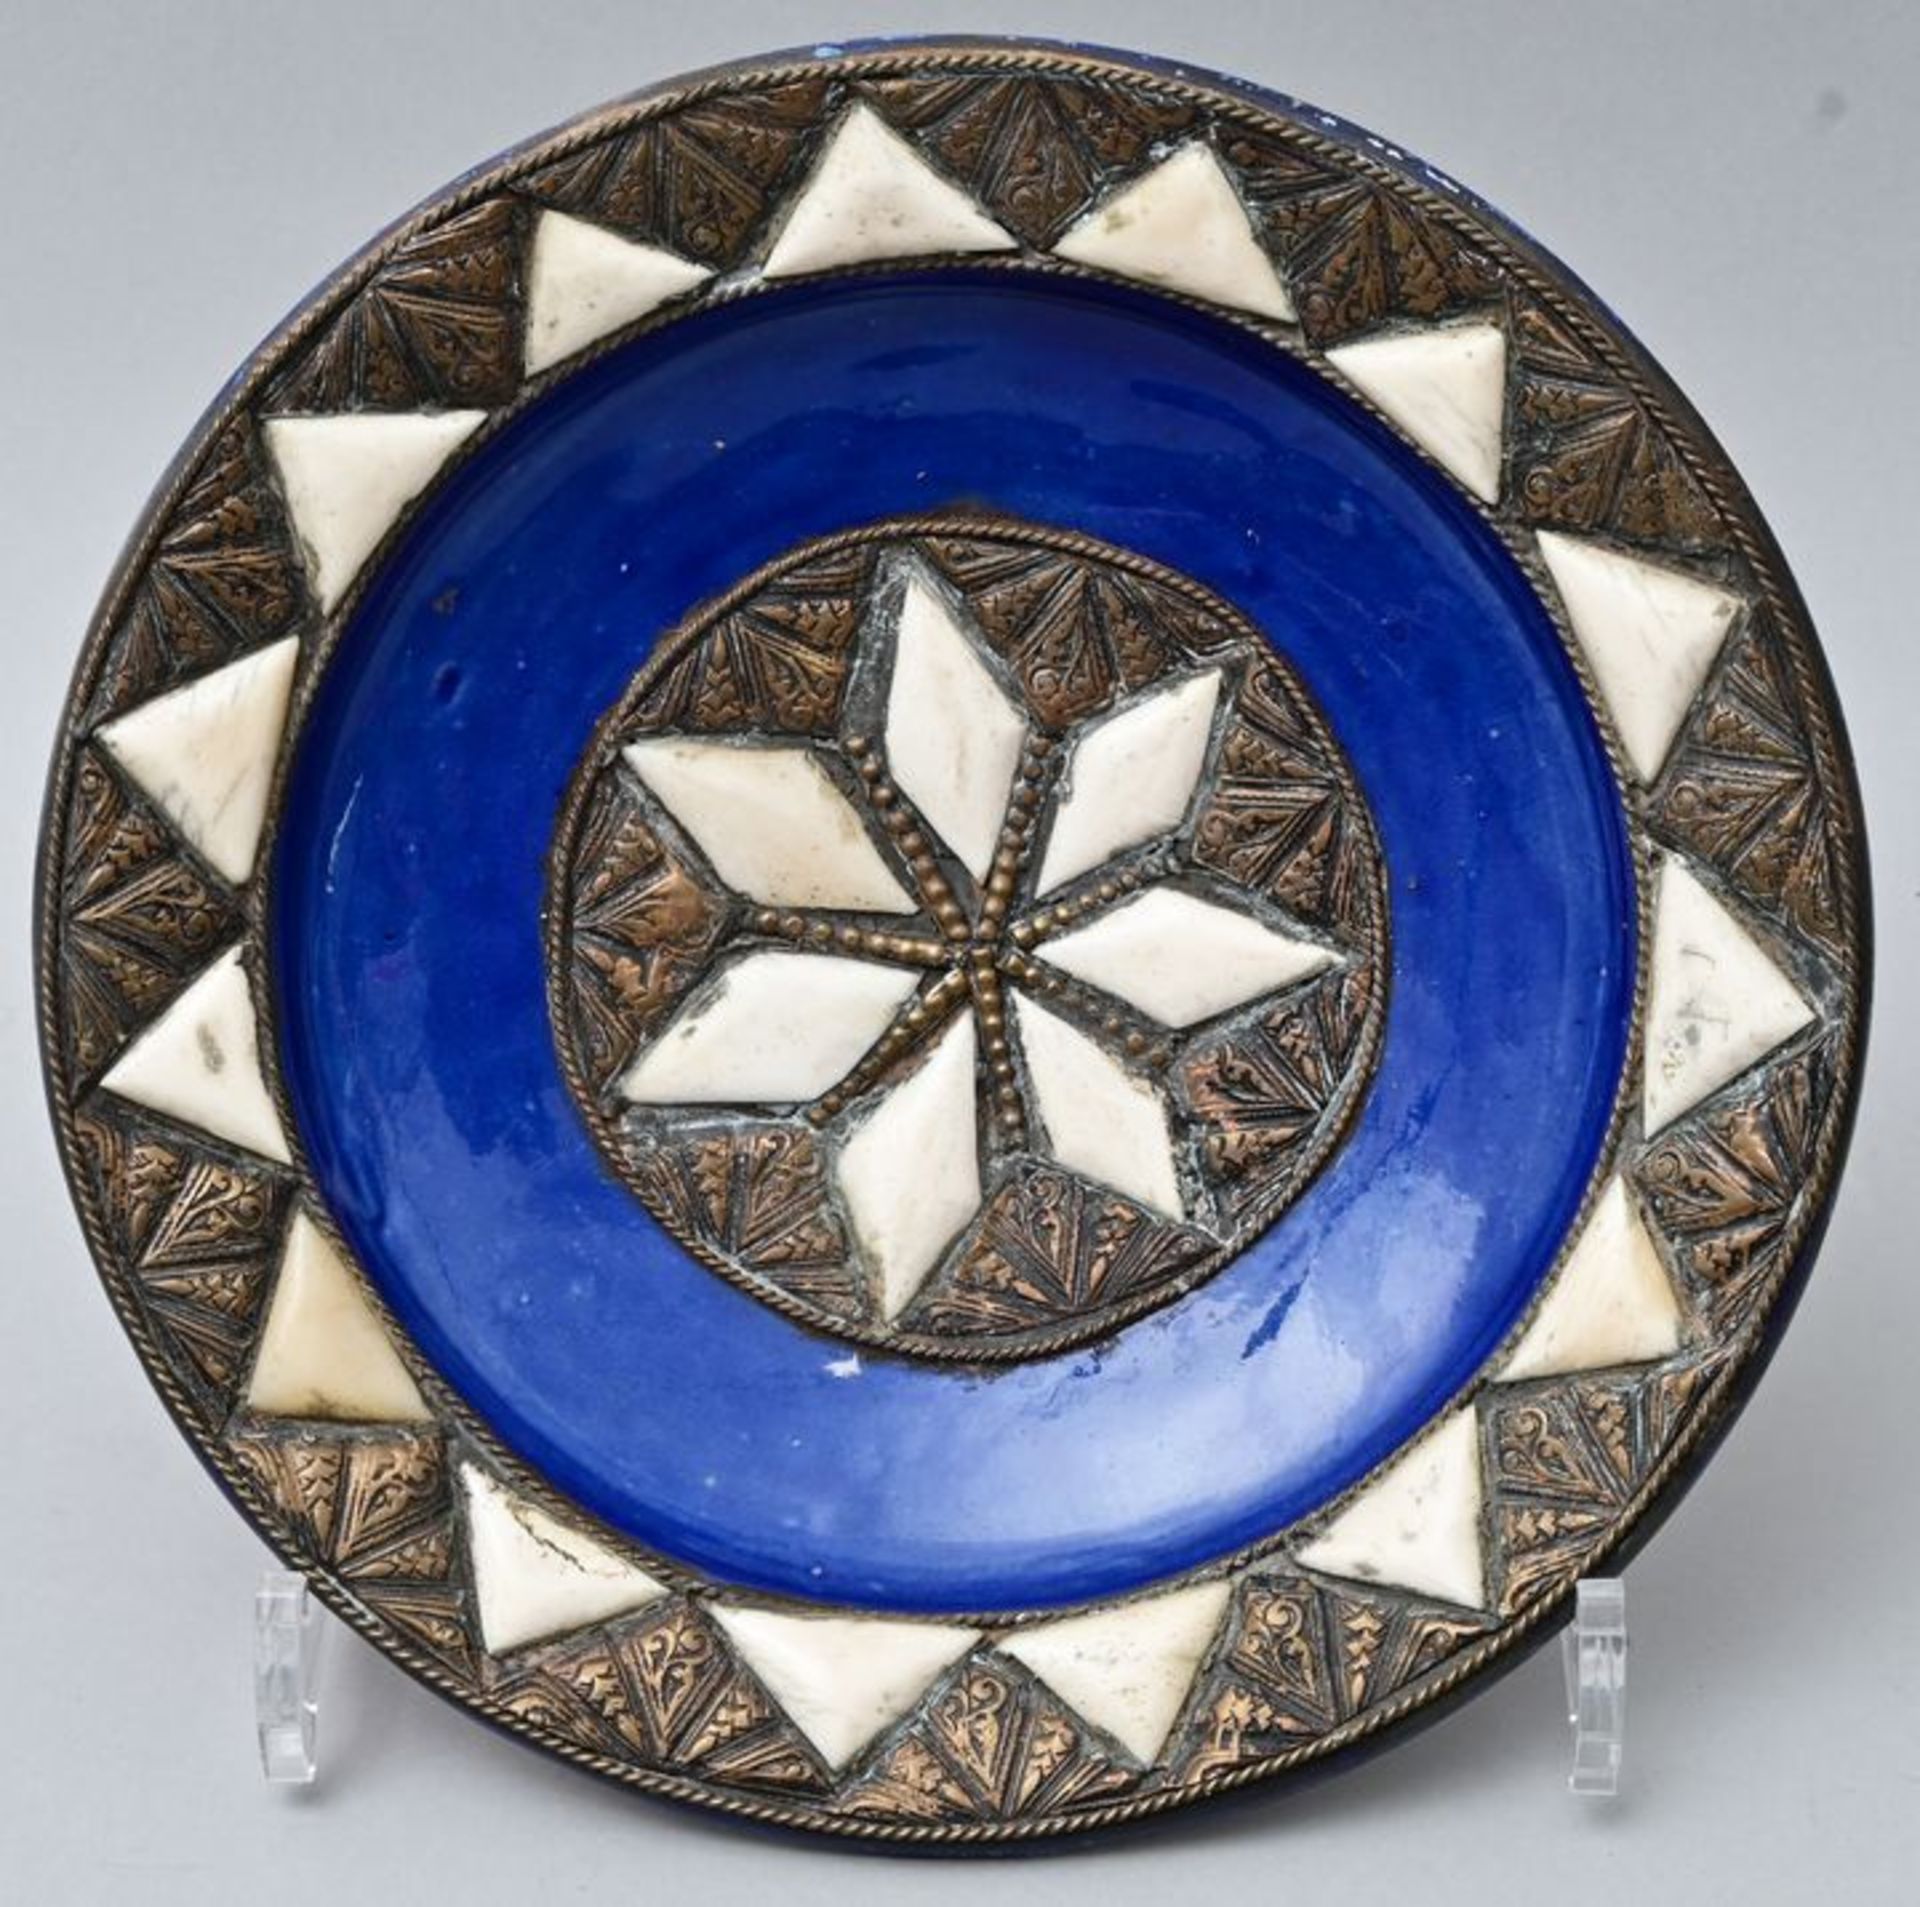 Marokkanische Keramik/ Moroccan ceramic